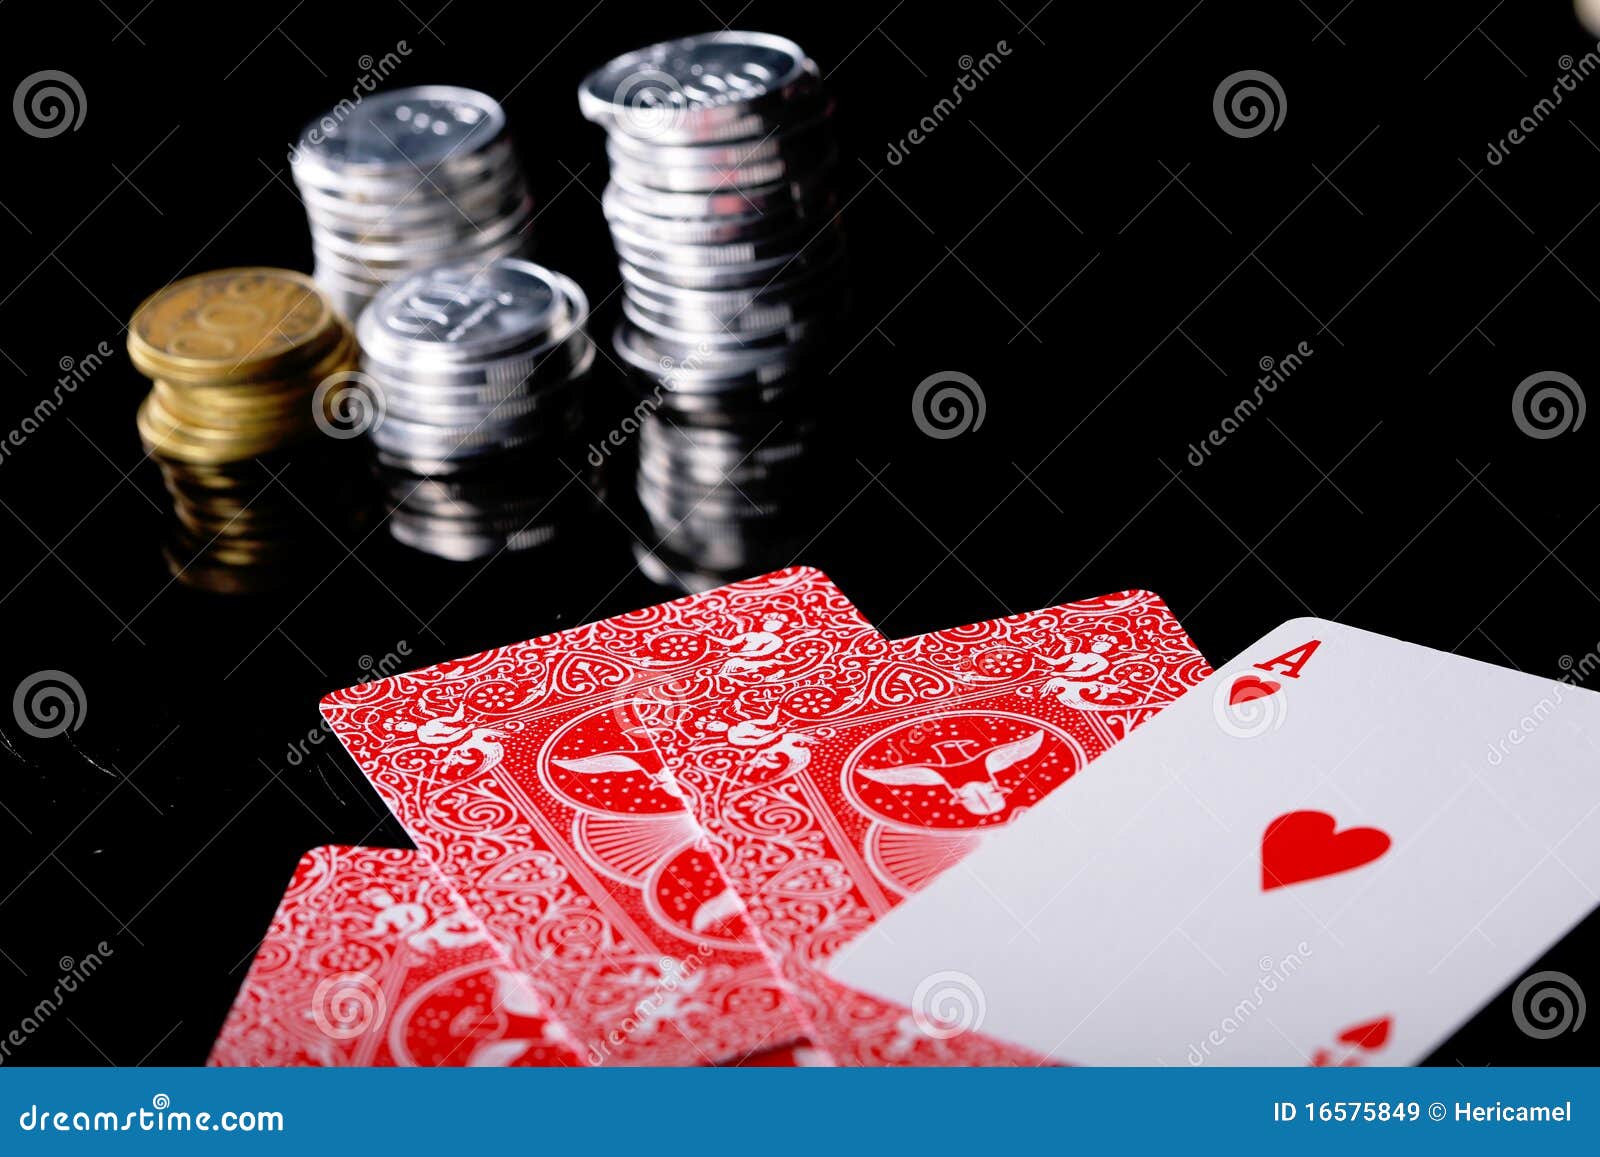 cpc poker